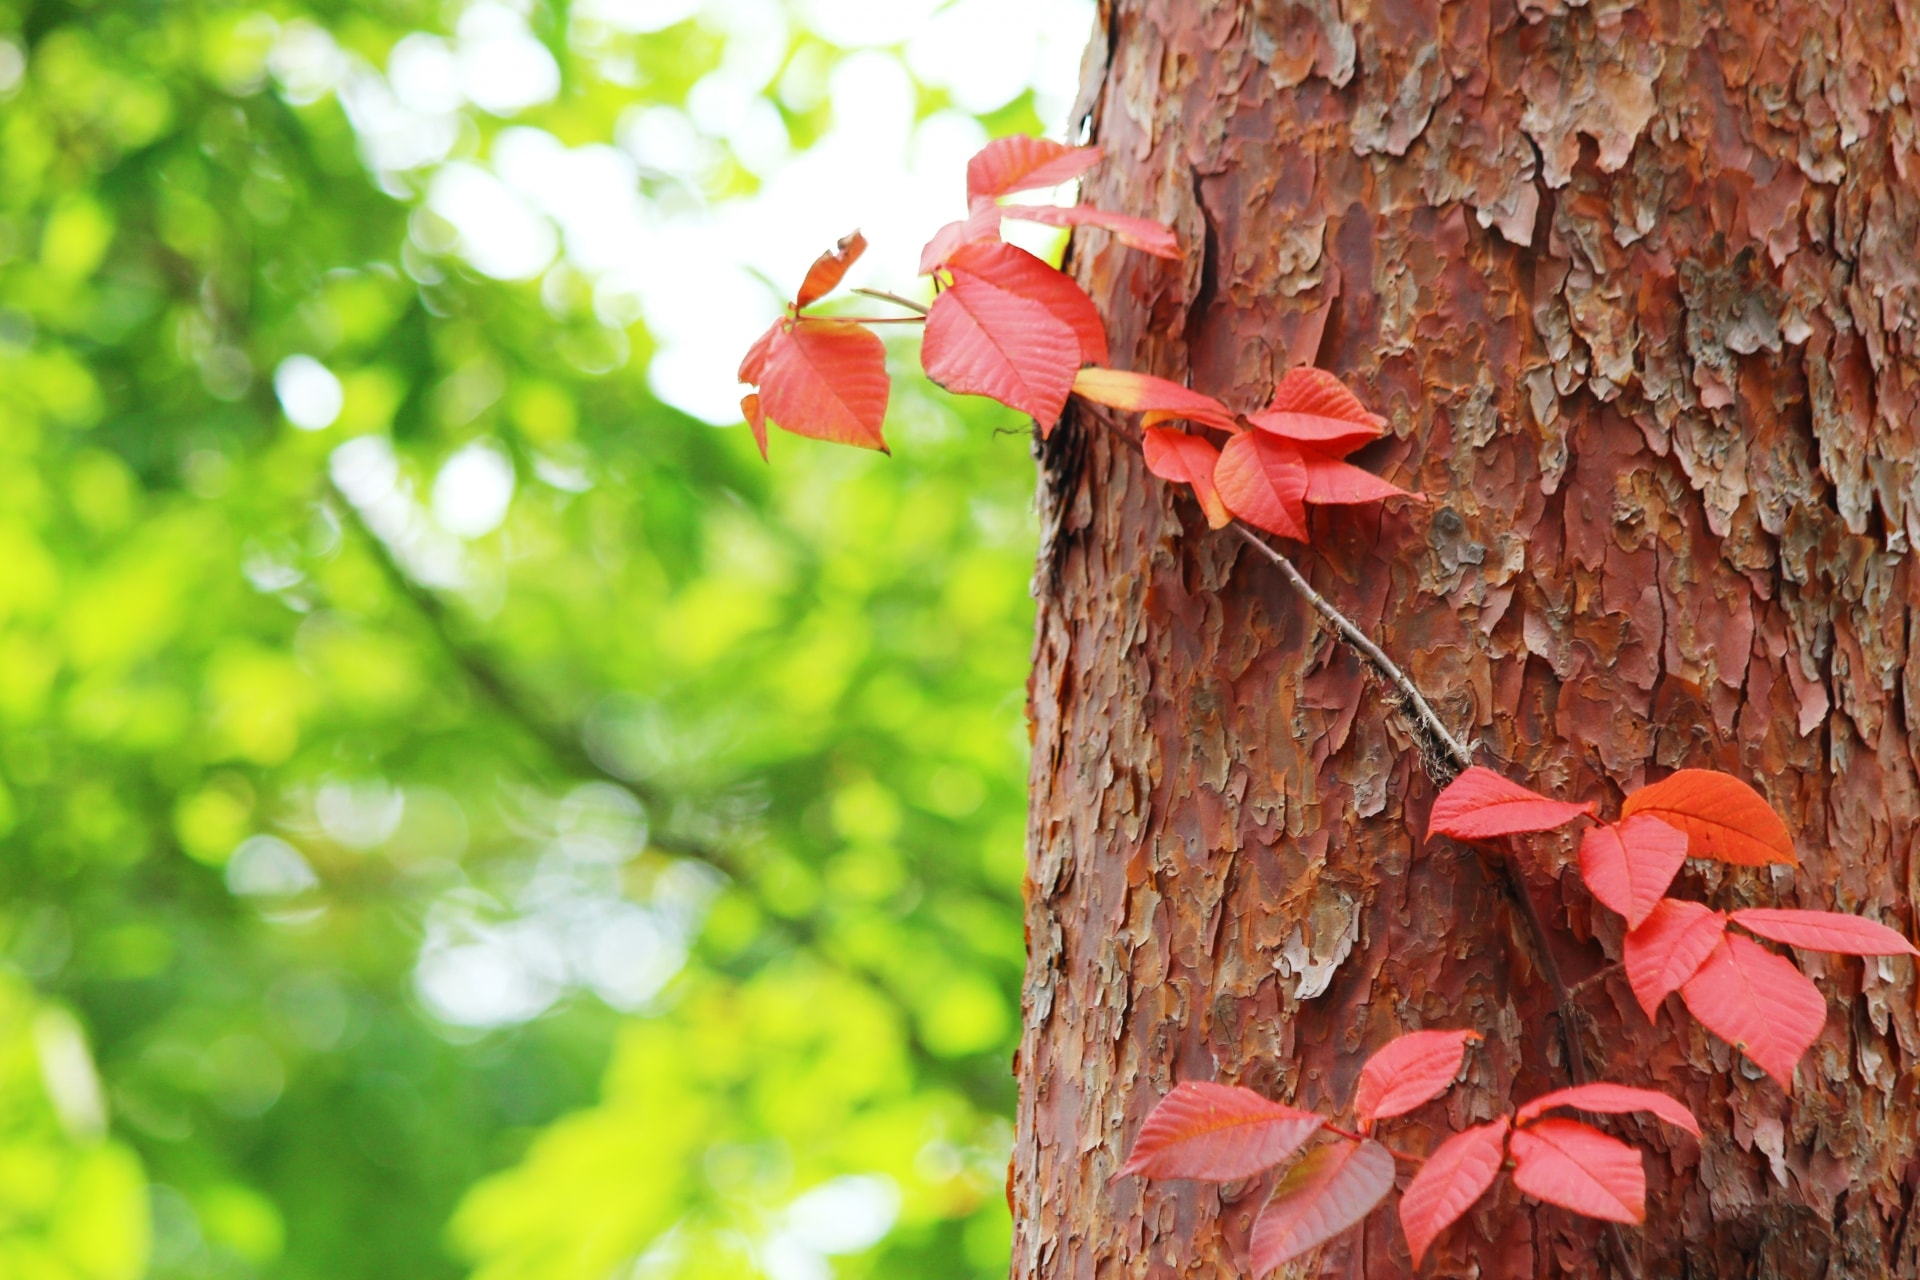 Toxicodendron vernicifluum Japanese lacquer tree (urushi)